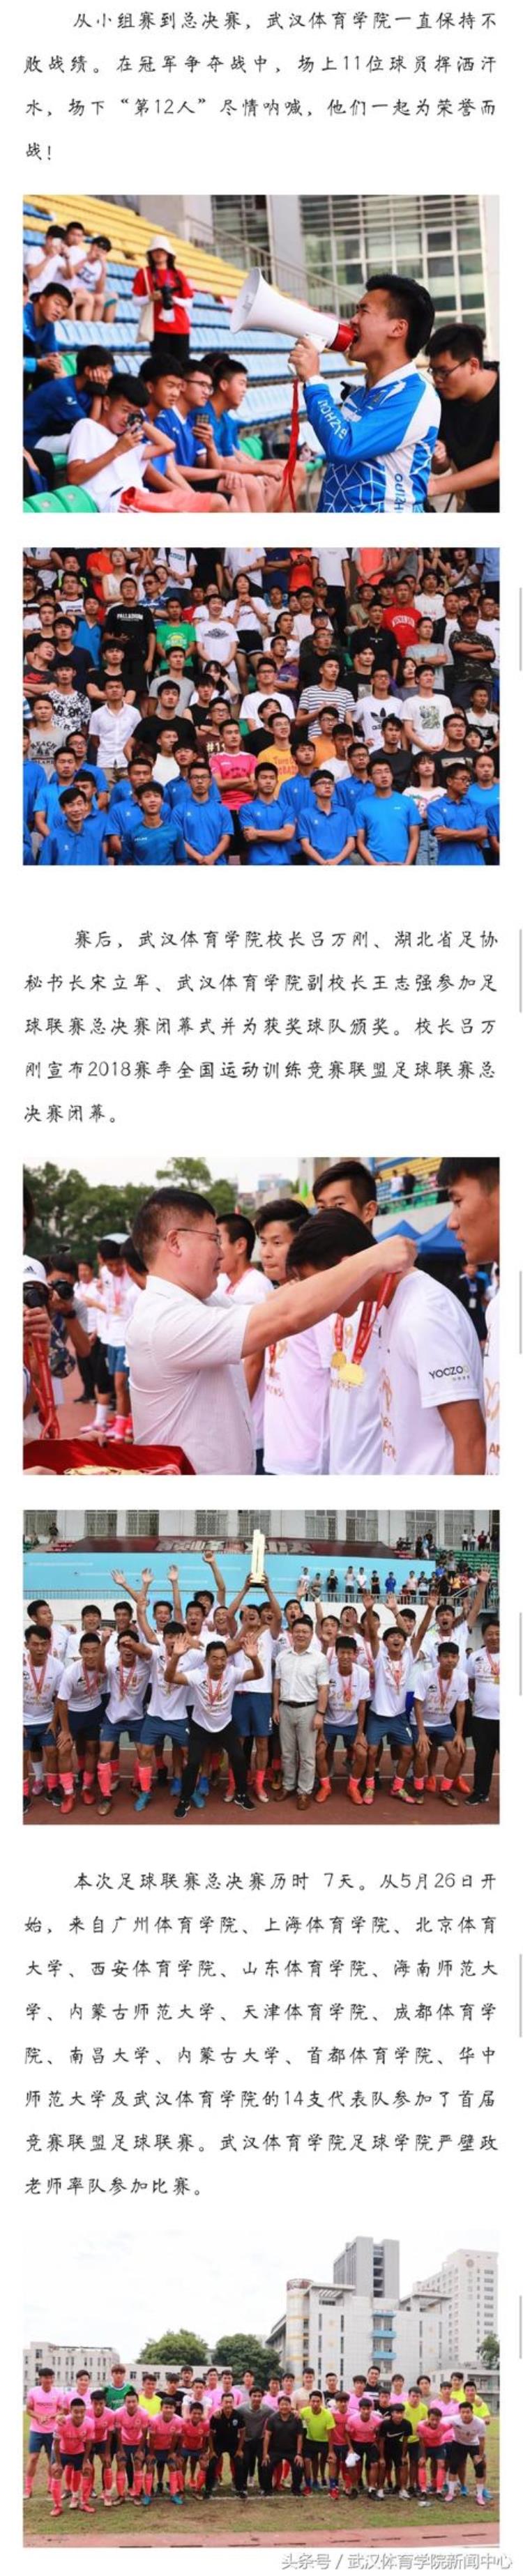 武汉体育学院比赛「武汉体育学院夺得竞赛联盟足球联赛总决赛冠军」